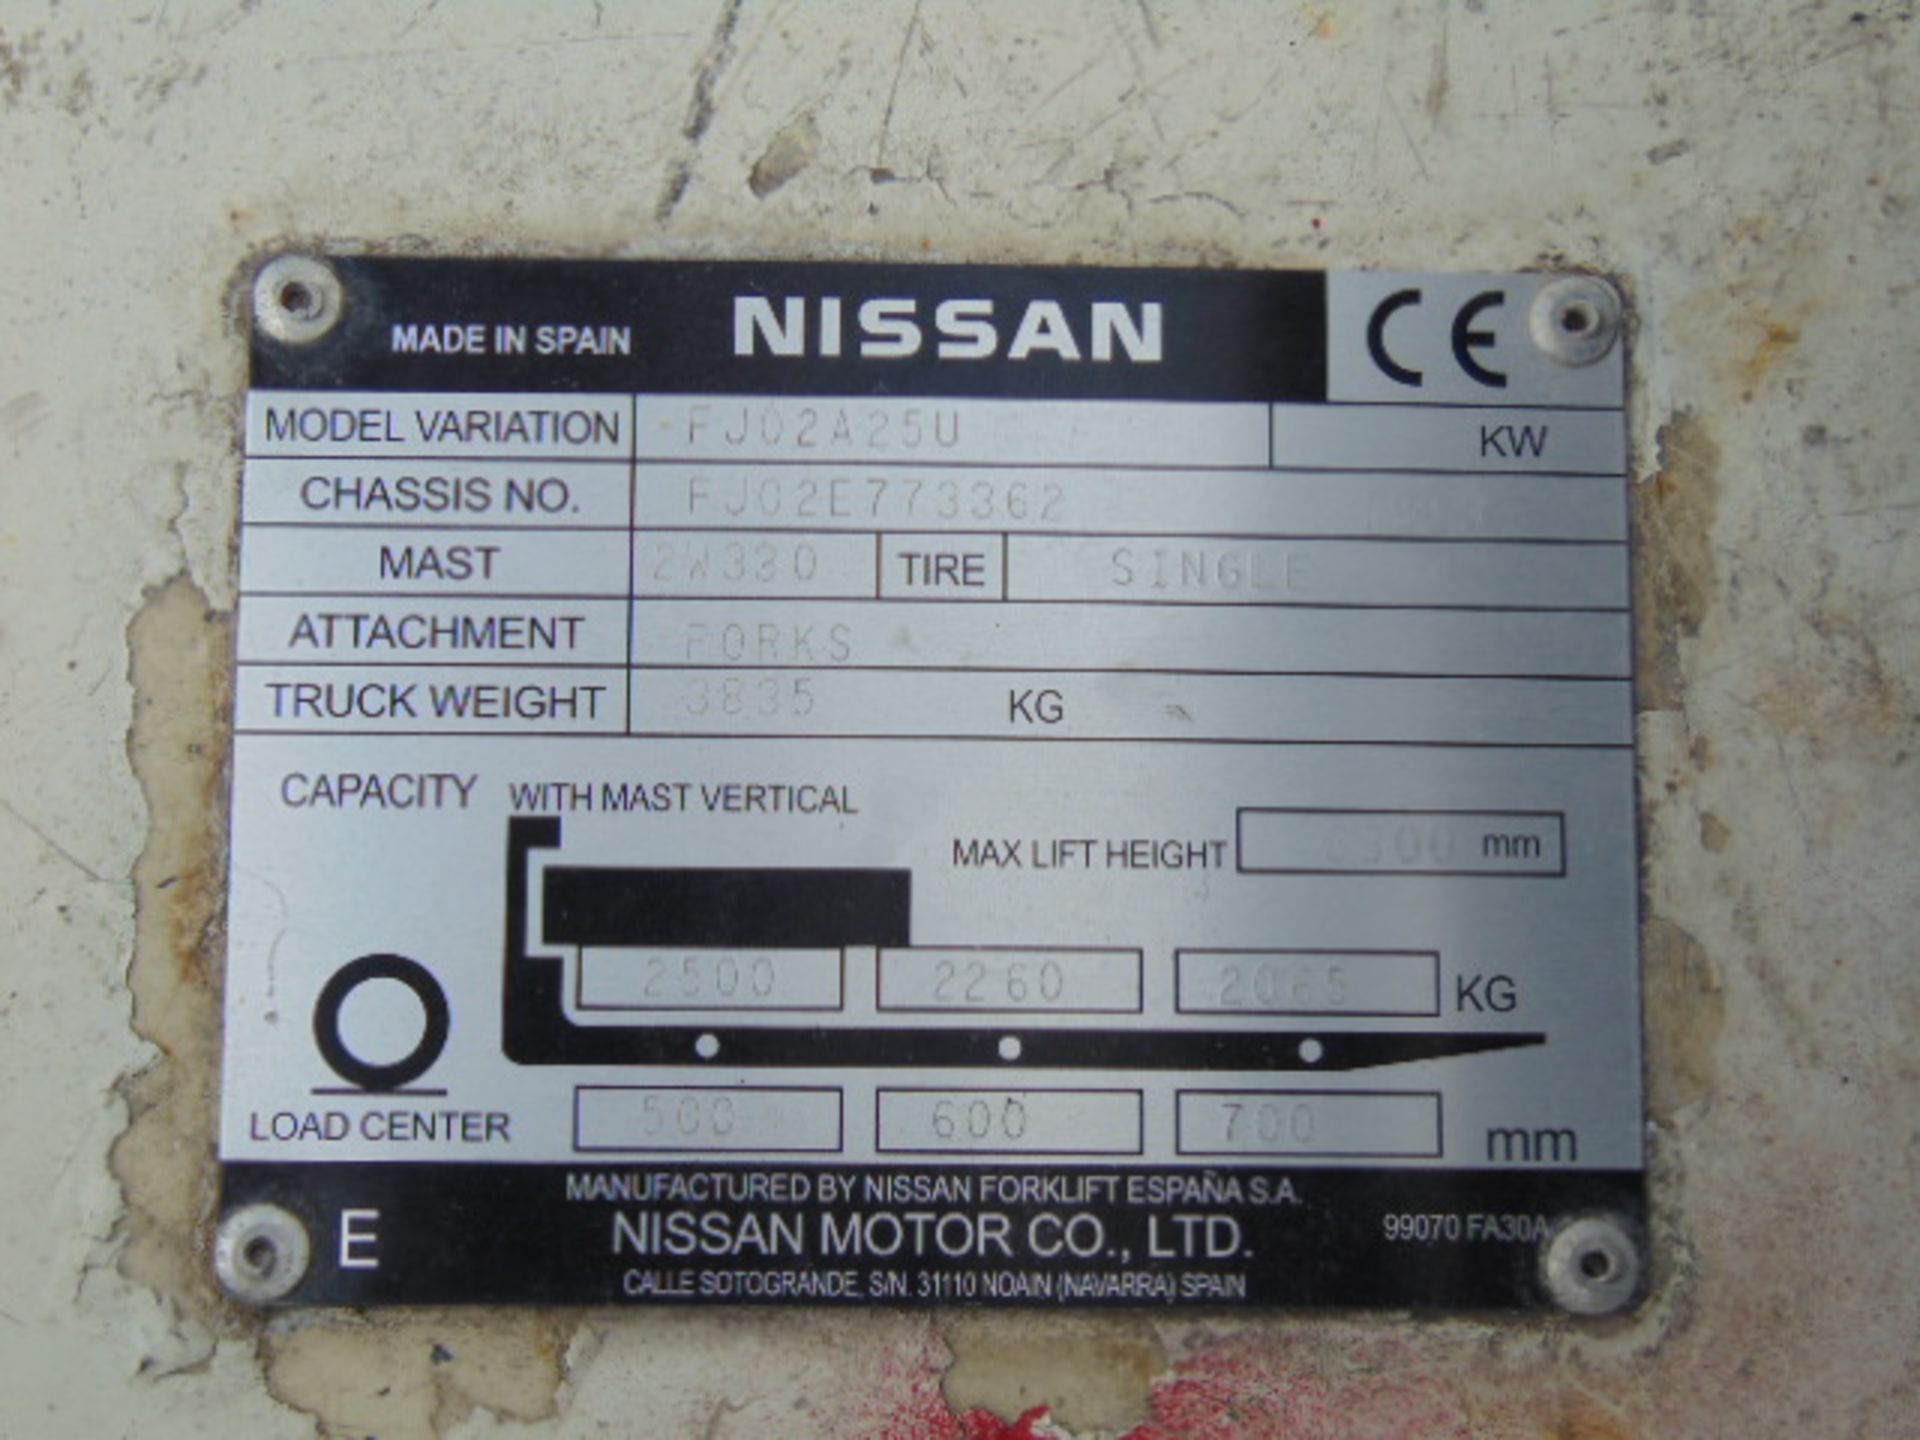 Nissan FJ02A25U Counter Balance Diesel Forklift - Image 15 of 16